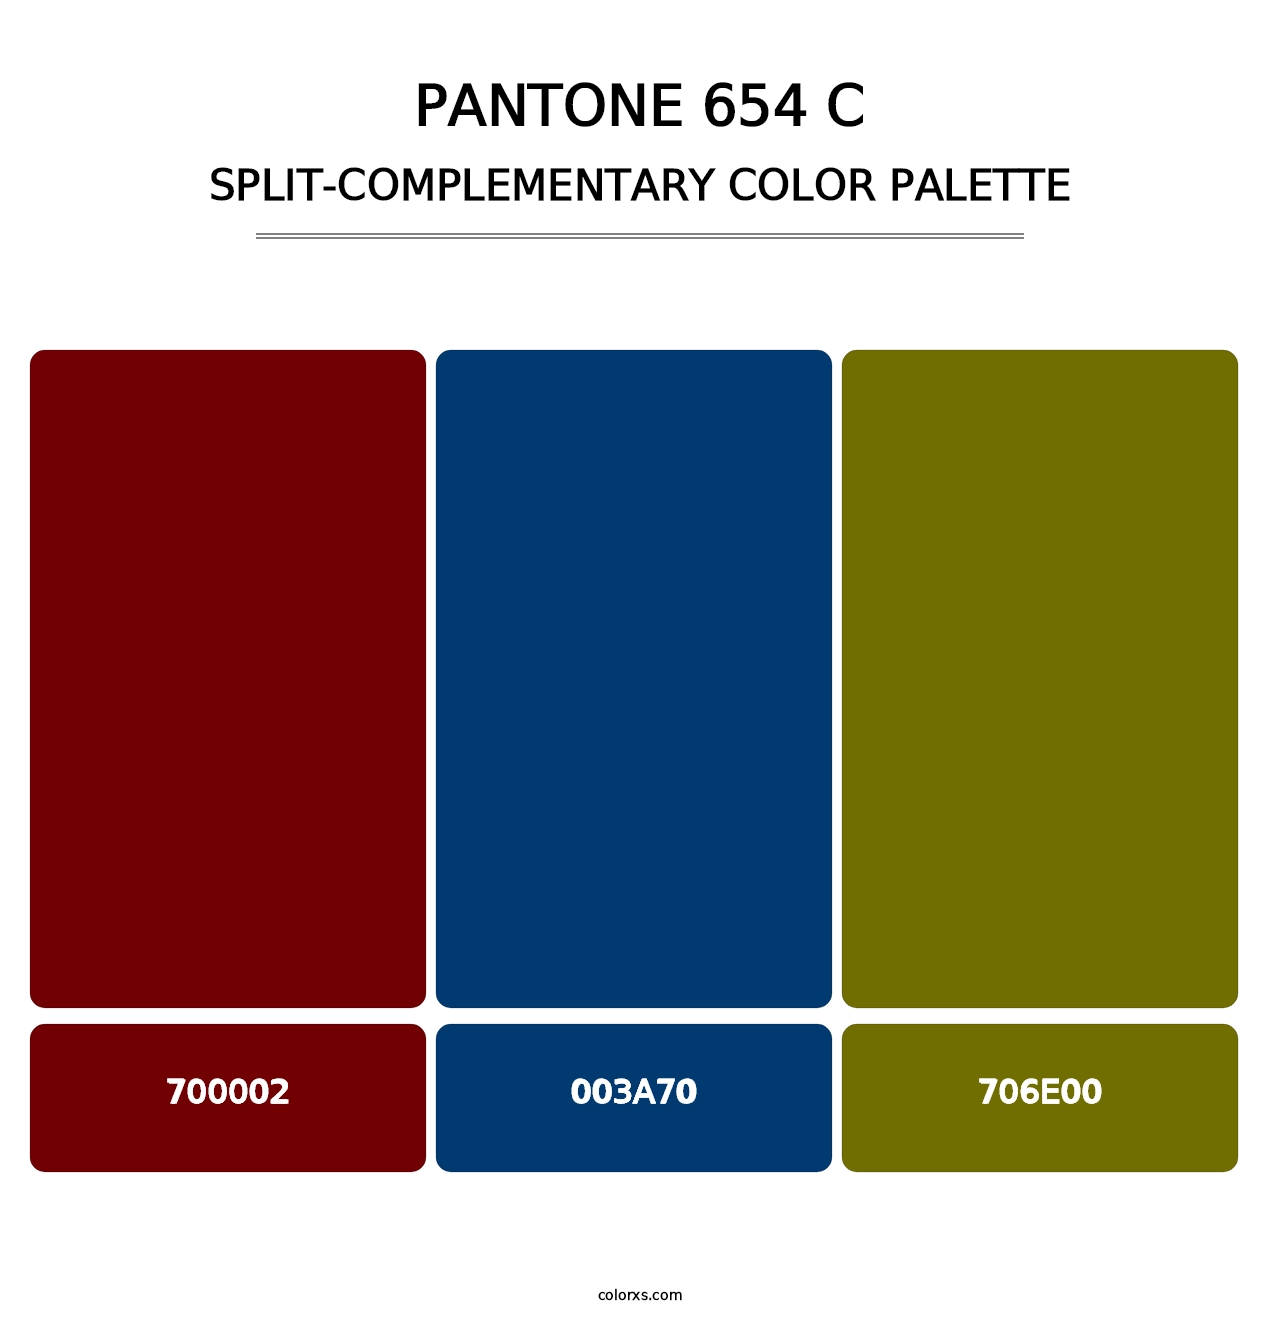 PANTONE 654 C - Split-Complementary Color Palette